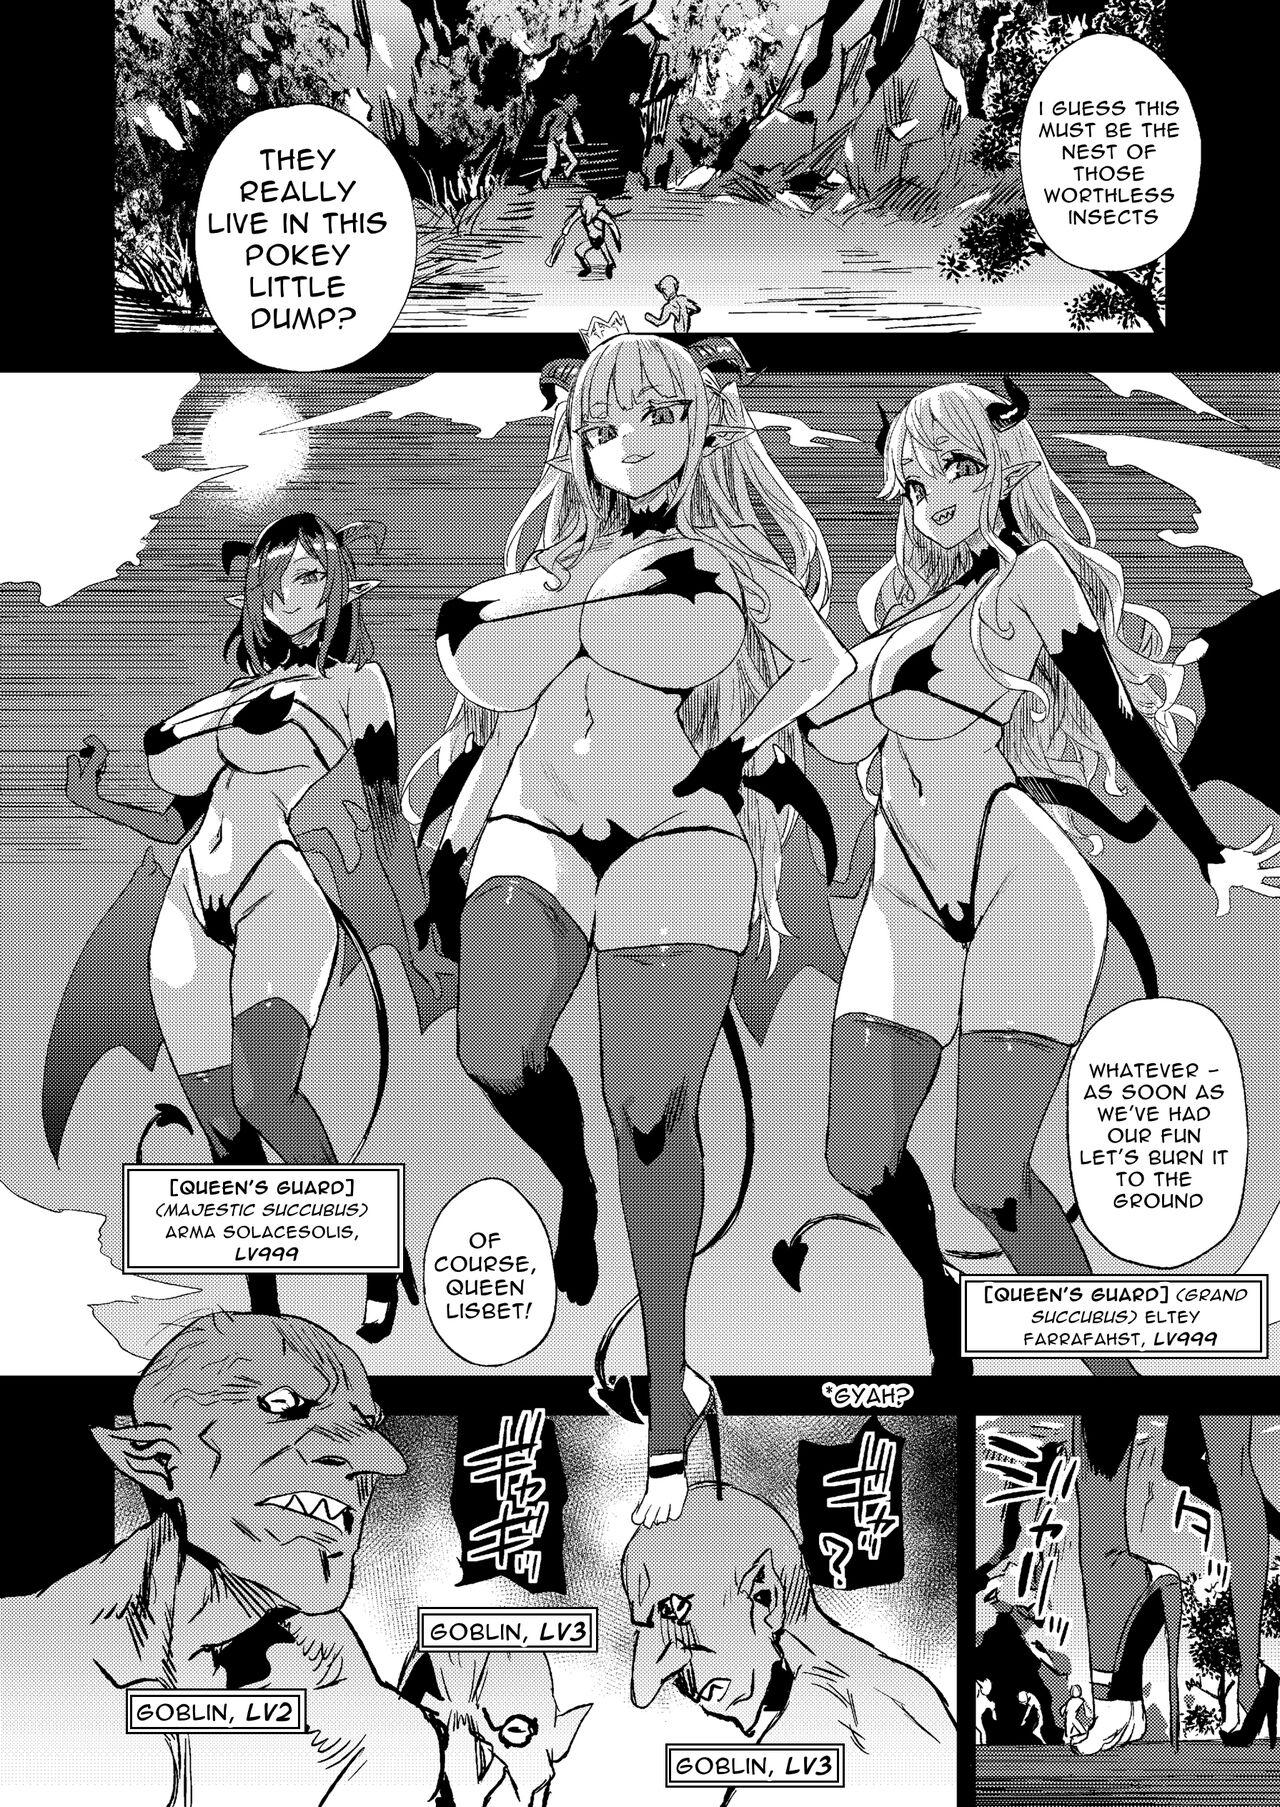 Cameltoe Succubus Queen vs Goblin Grunts - Original Siririca - Page 8